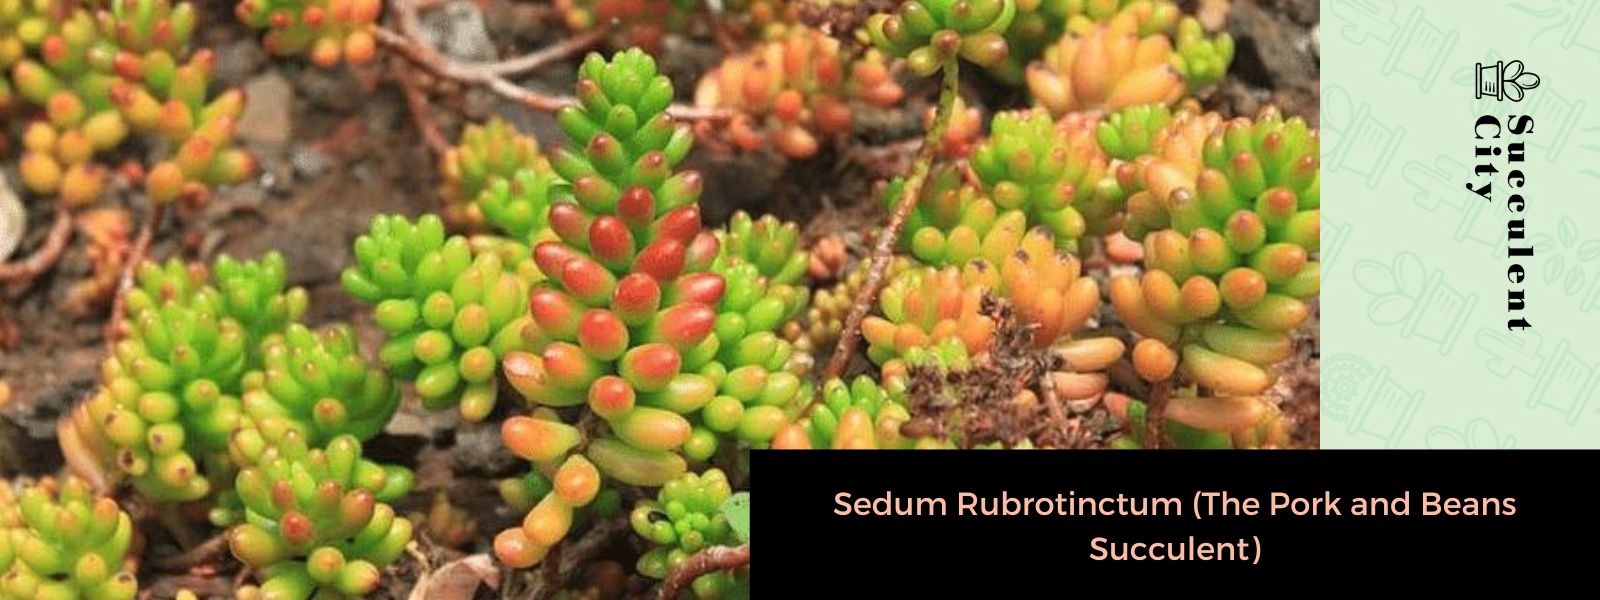 Sedum Rubrotinctum (suculenta de cerdo y frijoles)